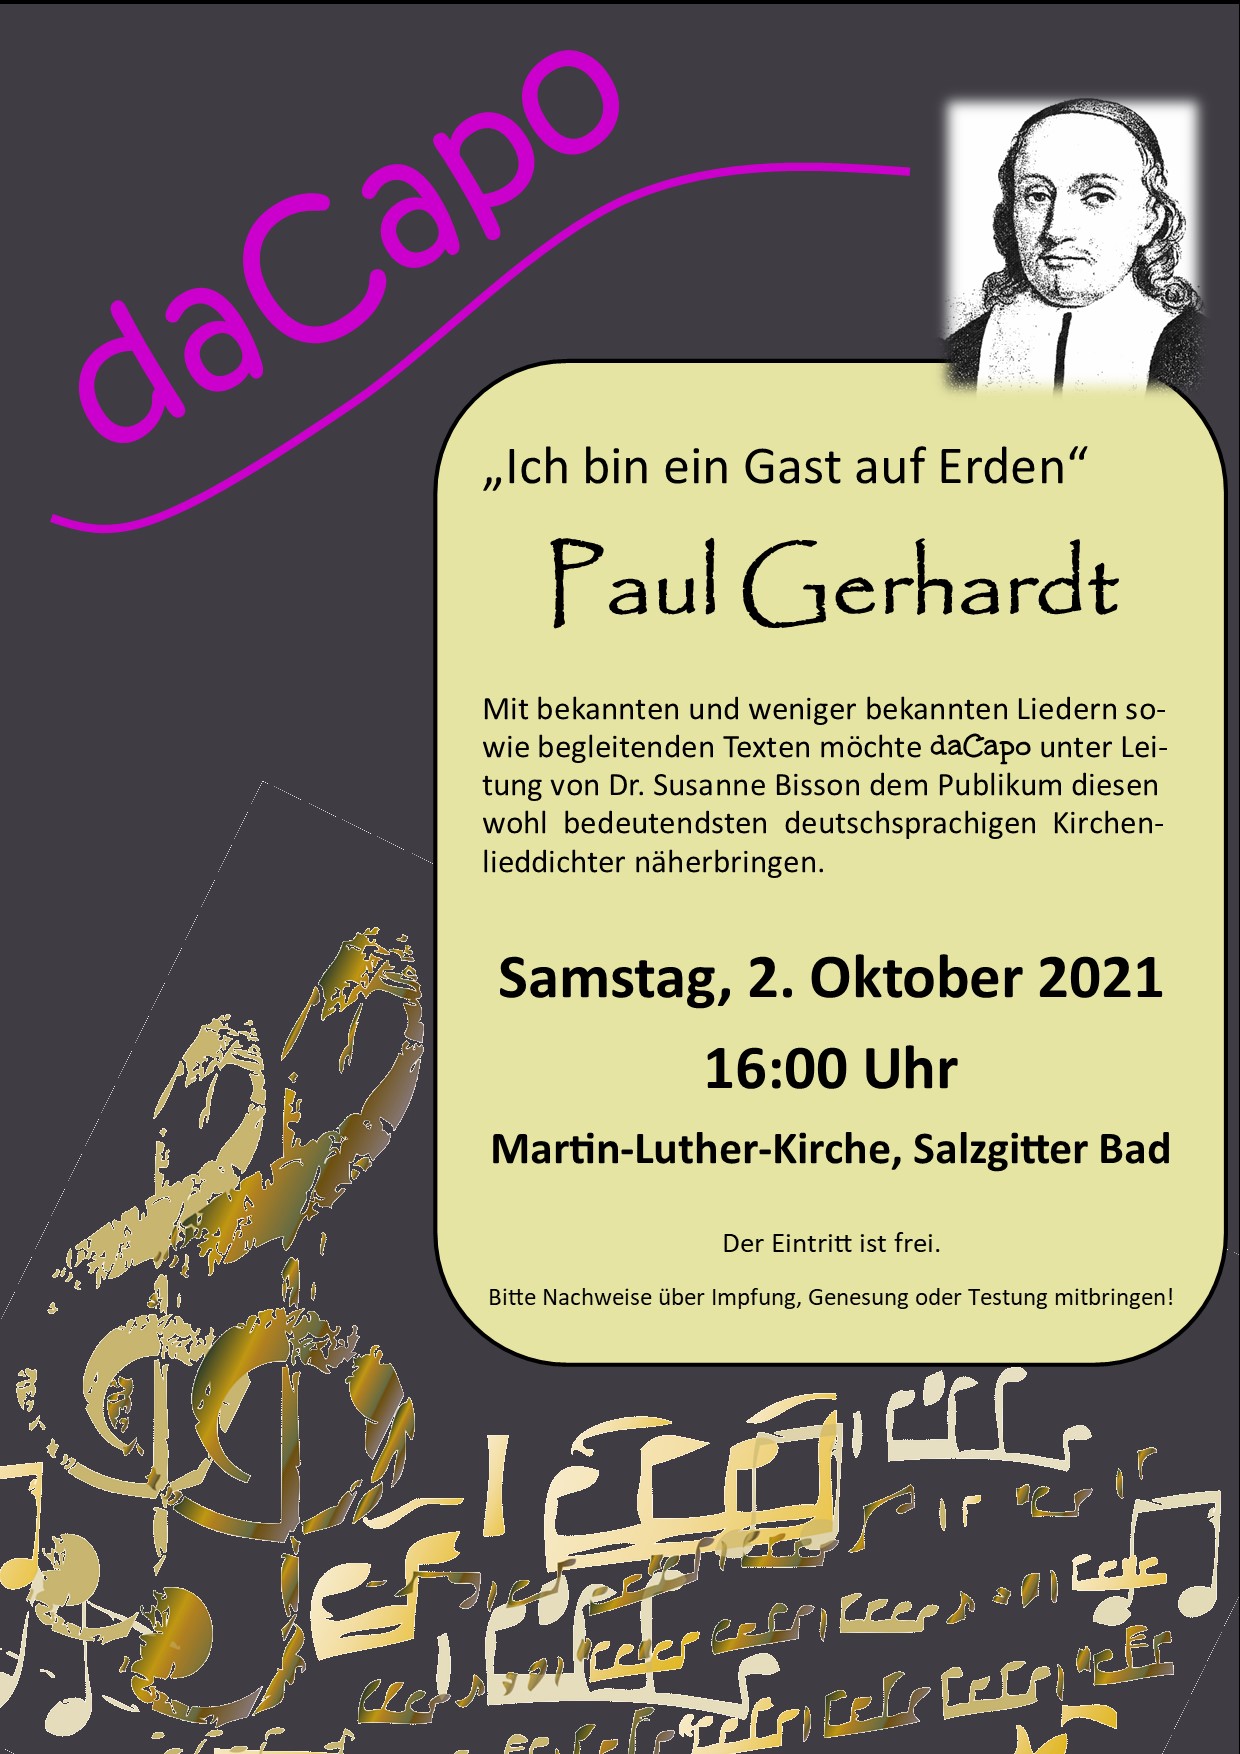 Ich bin ein Gast auf Erden – Paul-Gerhardt-Konzert am 2. Oktober 2021